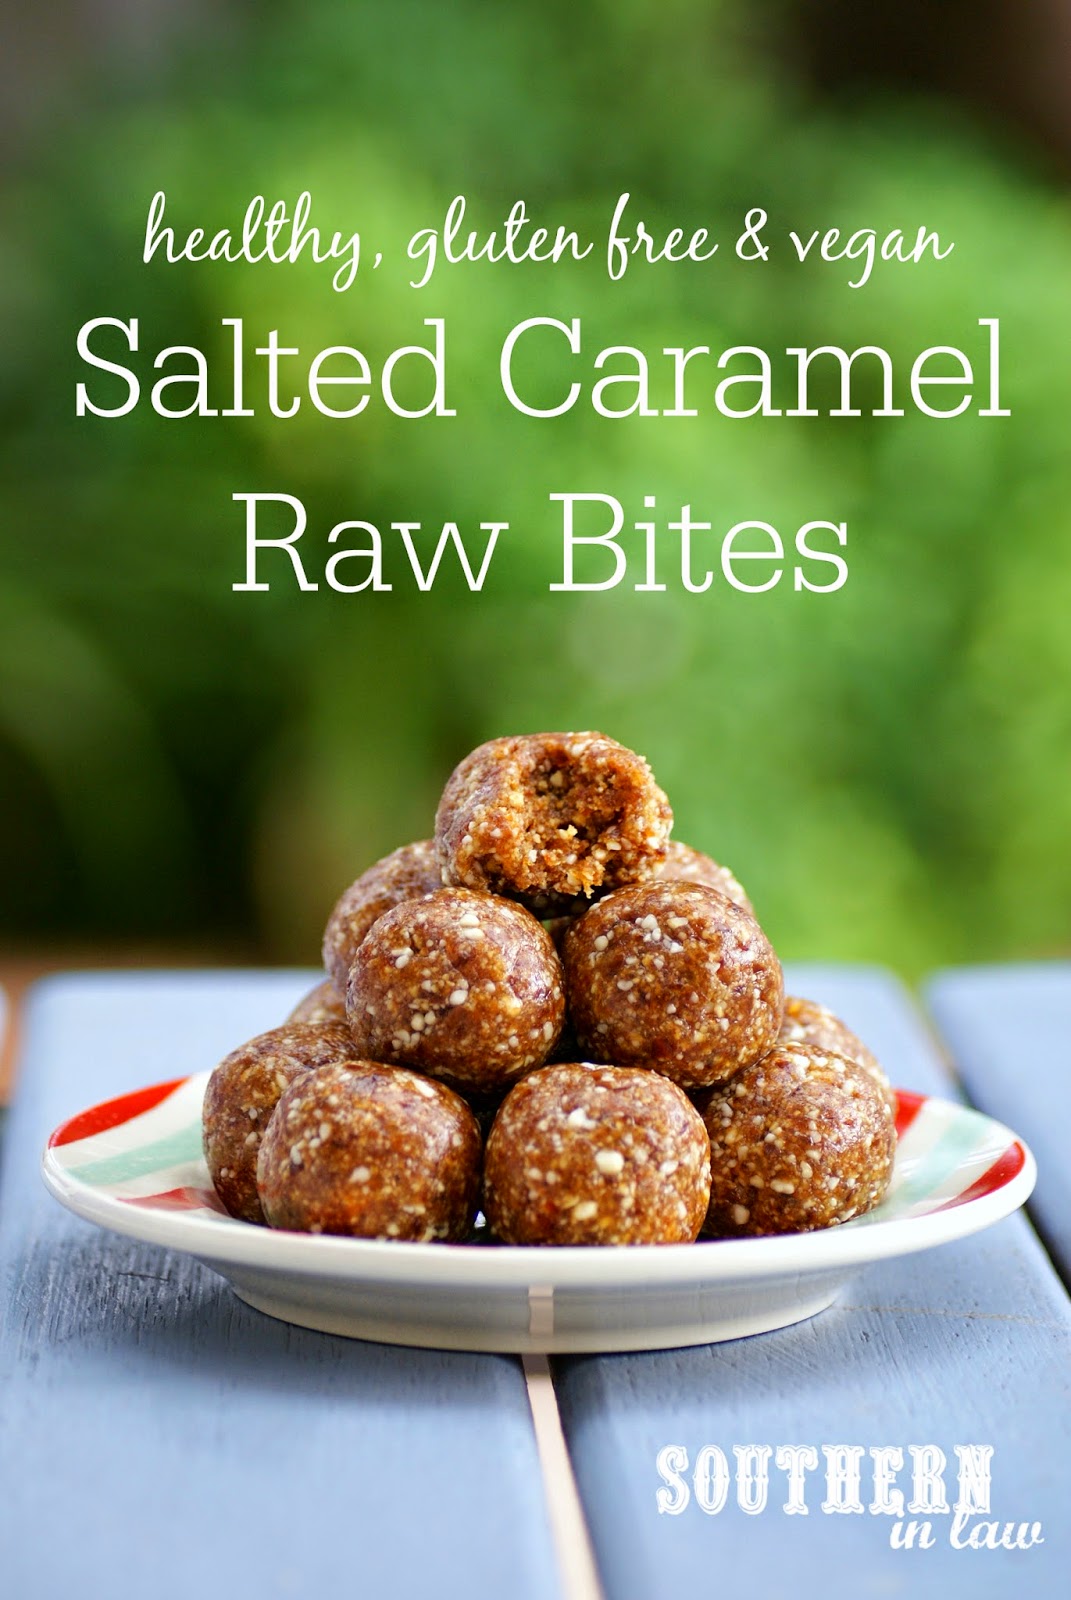 Vegan Salted Caramel Raw Bites Recipe - Healthy, Raw, Vegan, Gluten Free, Sugar Free, Egg Free, Dairy Free Bliss Balls